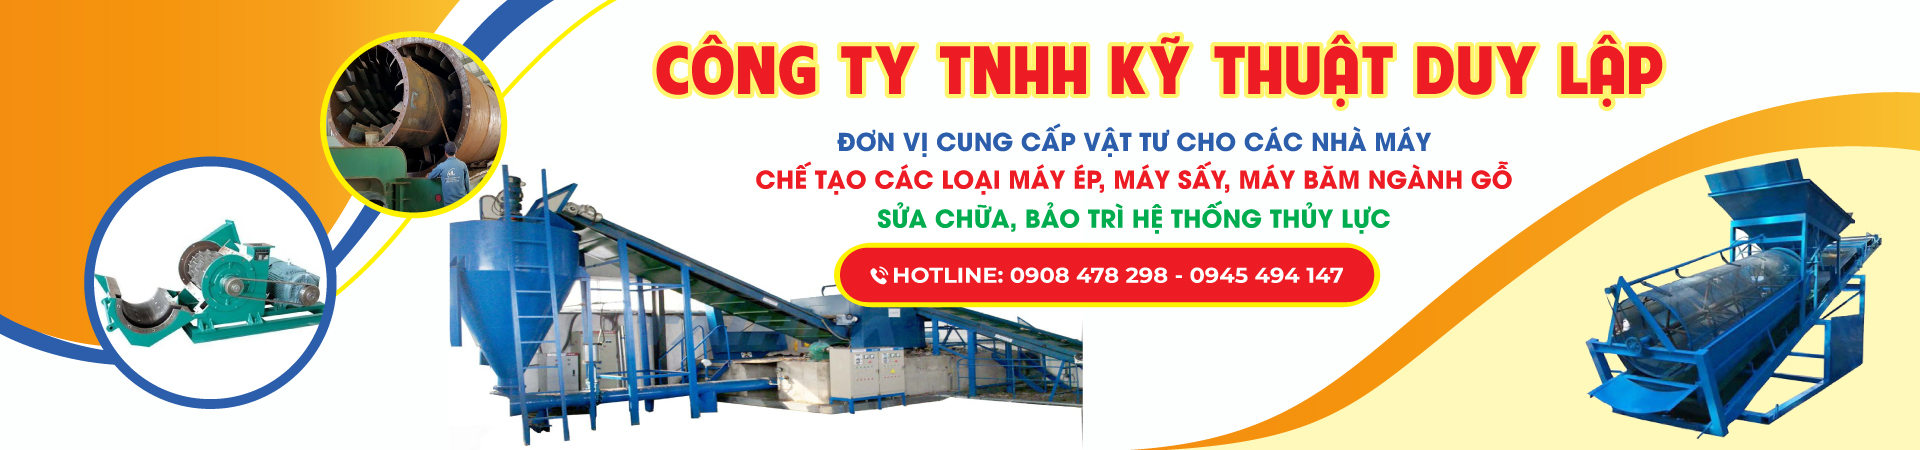 Banner Cua hang Duy Lap 3